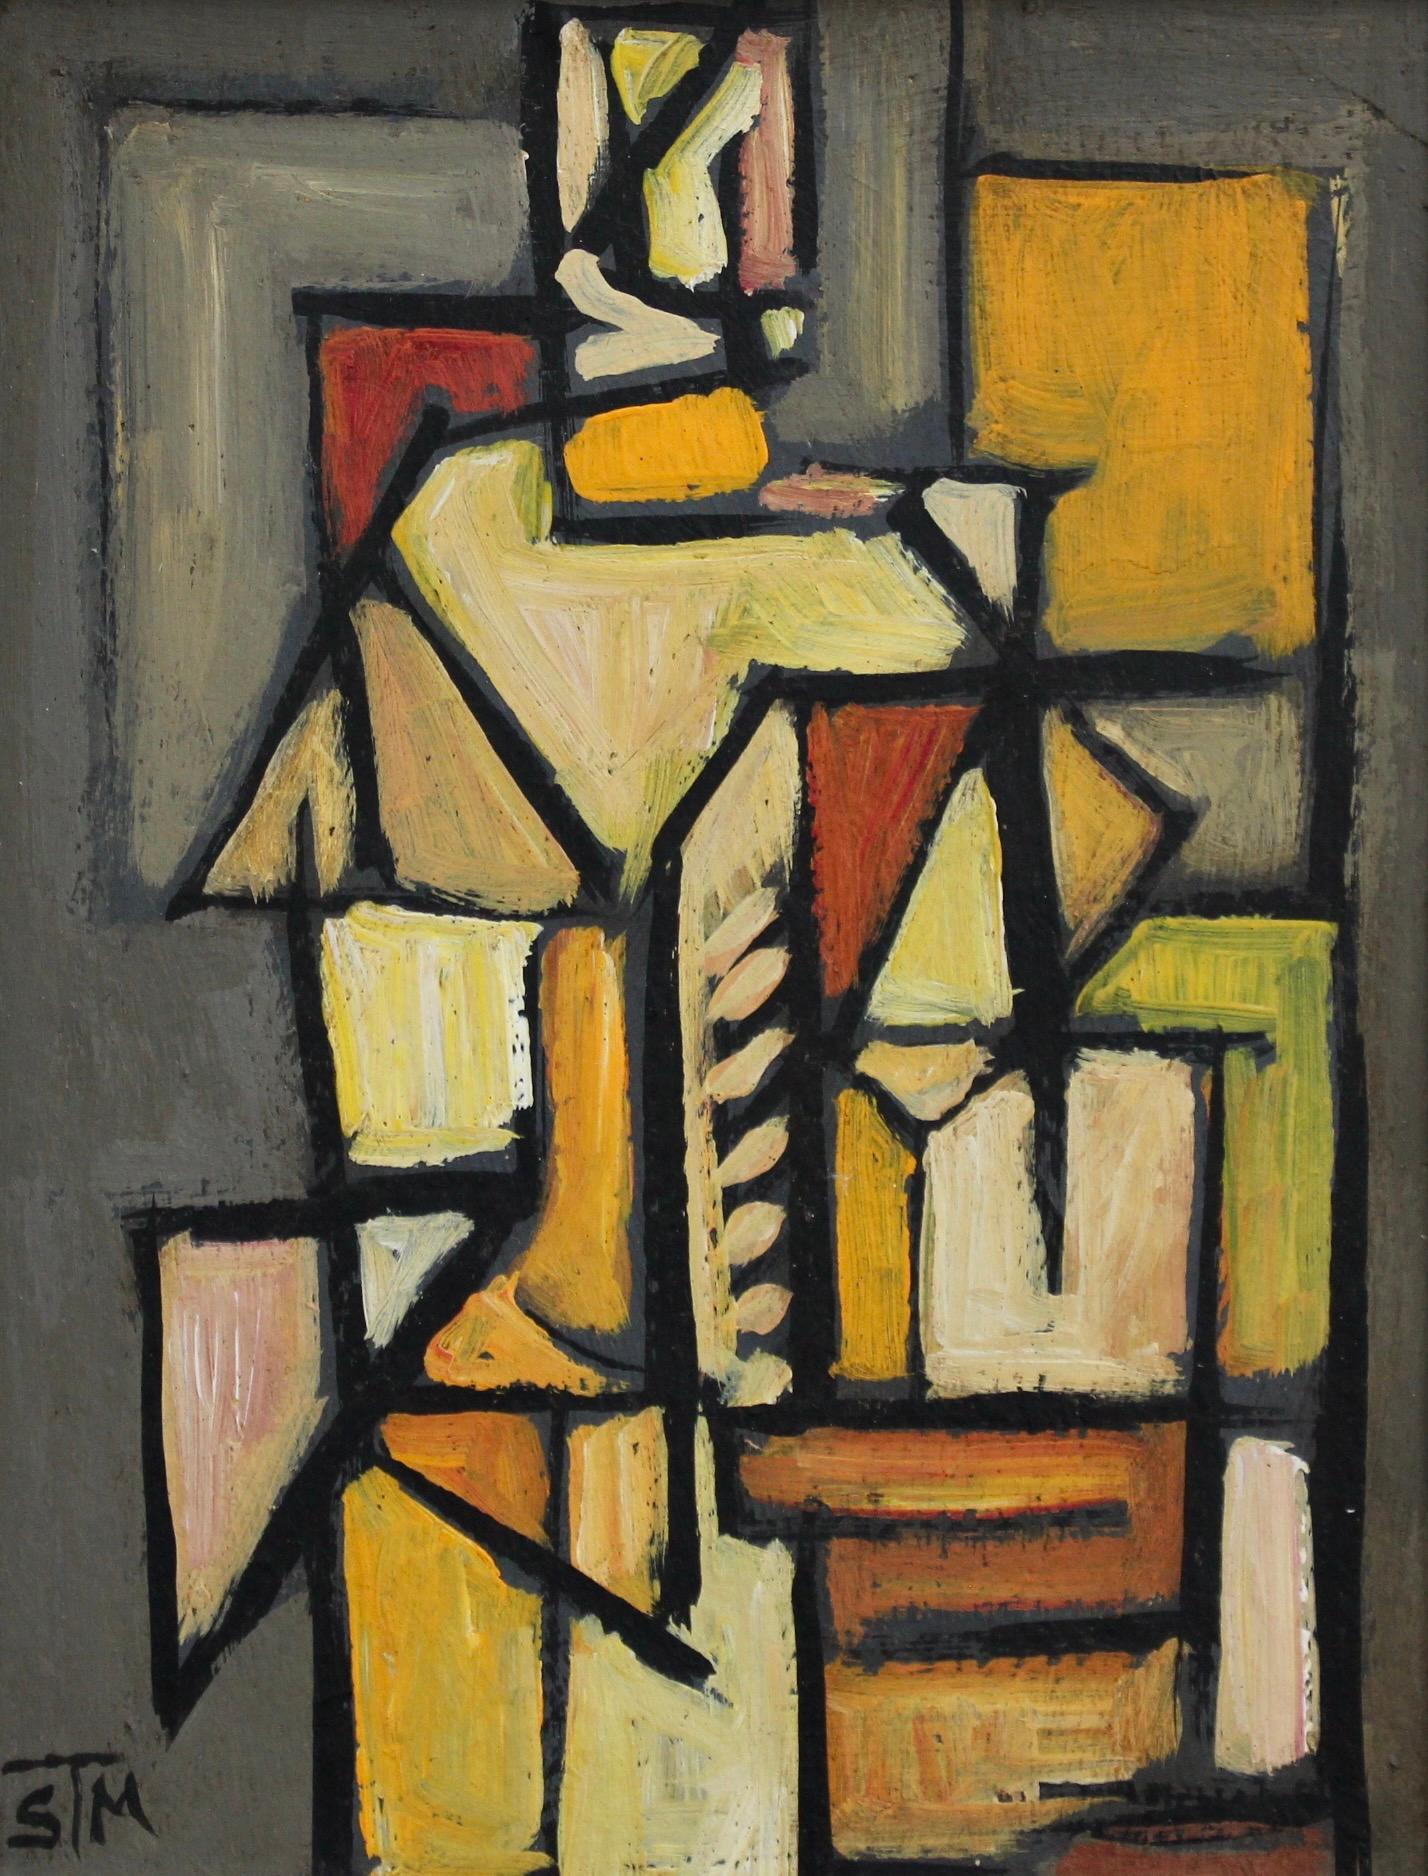 STM Portrait Painting - Cubist Figure